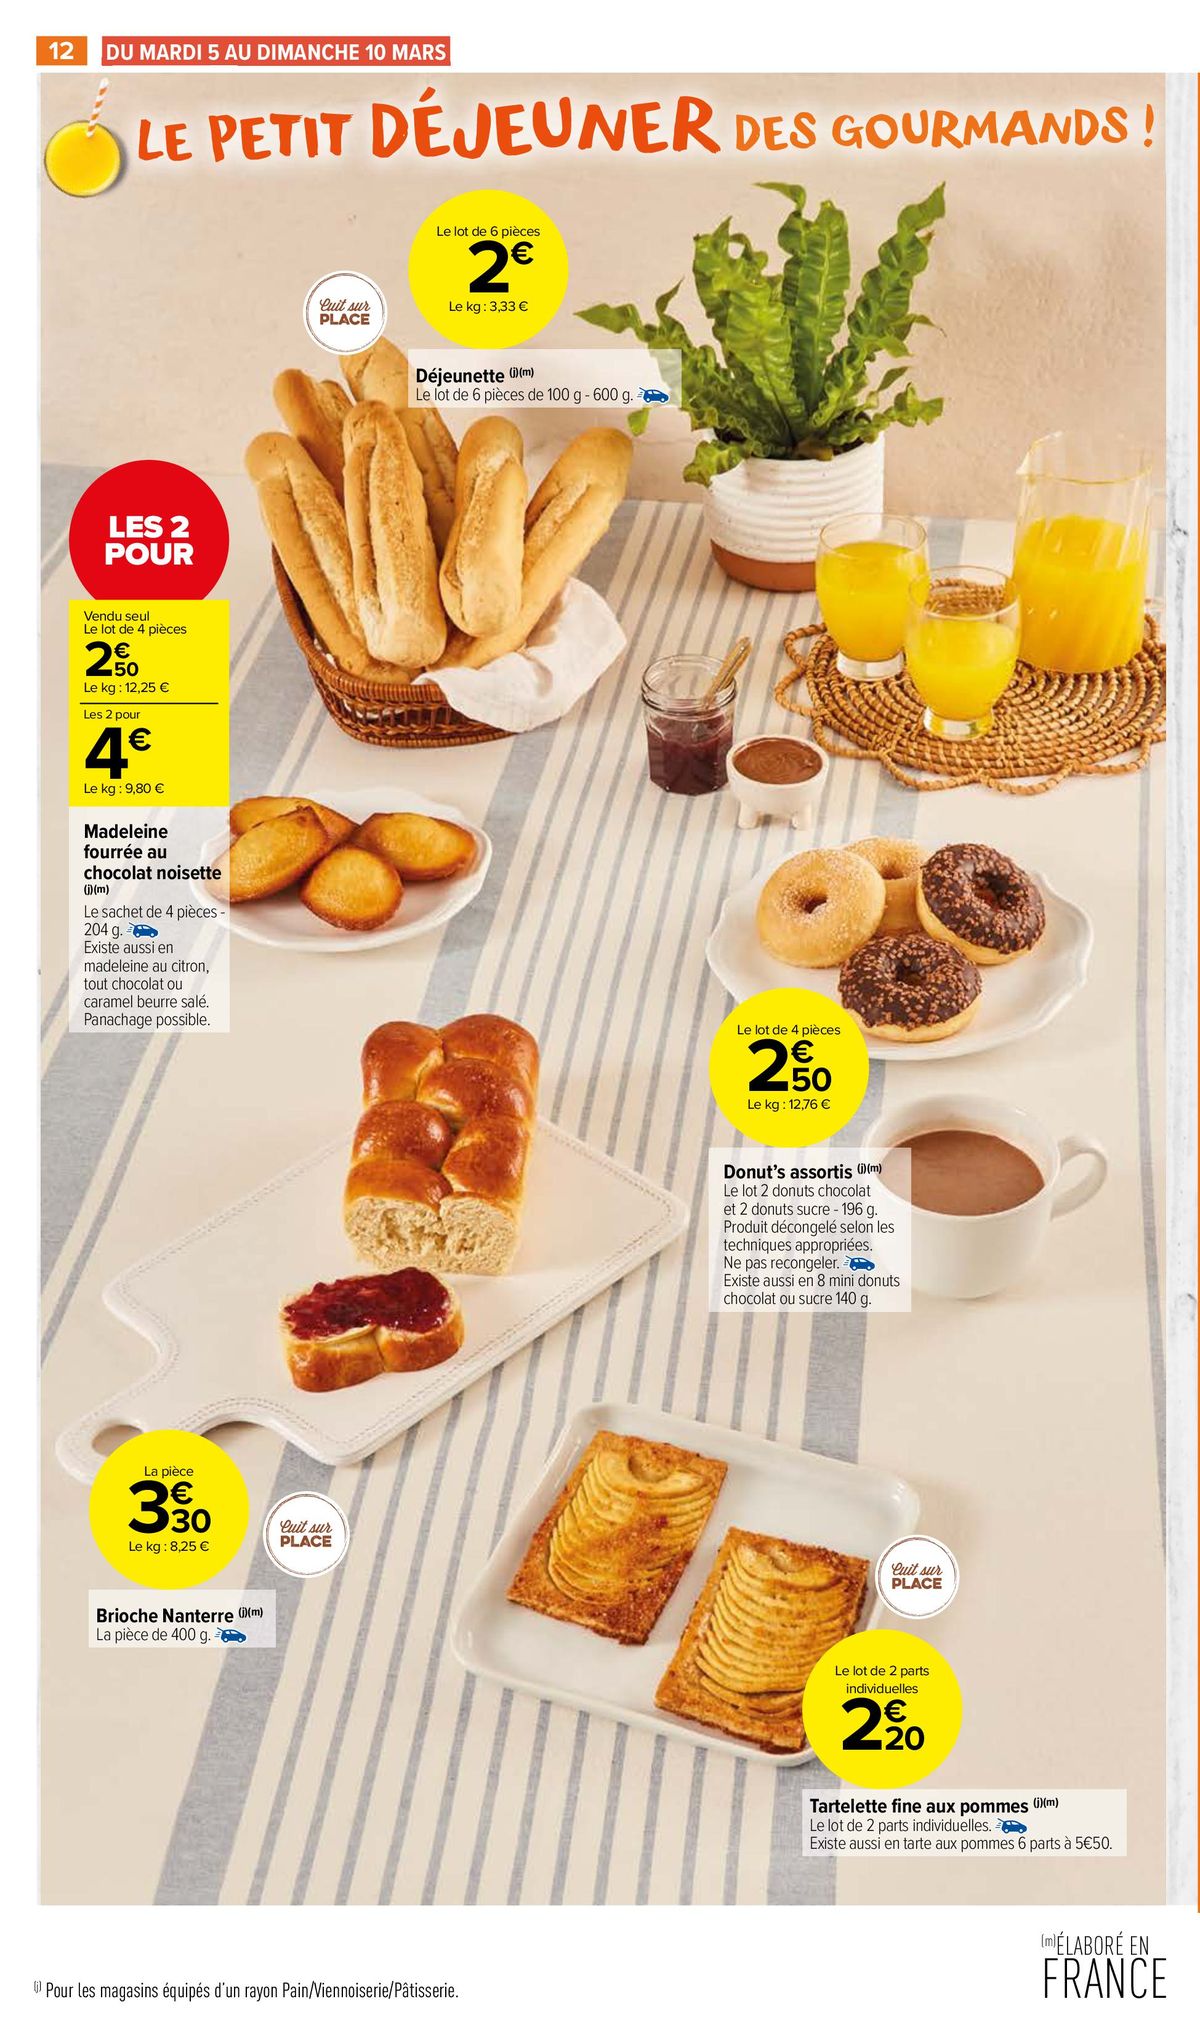 Catalogue Un petit déjeuner pour tous les goûts !, page 00014